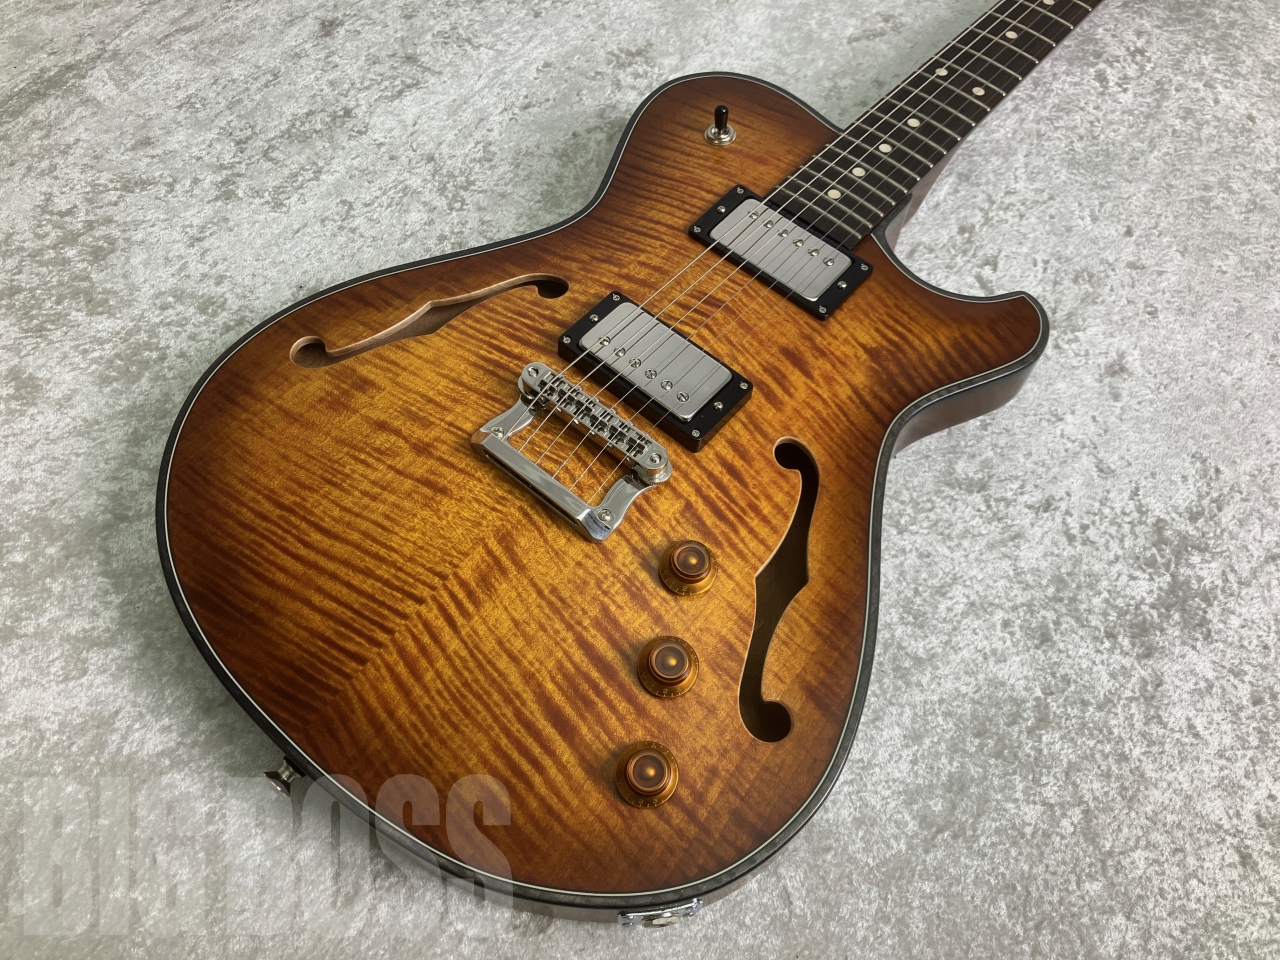 【即納可能】Knaggs Guitars(ナッグスギターズ) KGT CHENA T2 #350 お茶の水駅前店(東京)